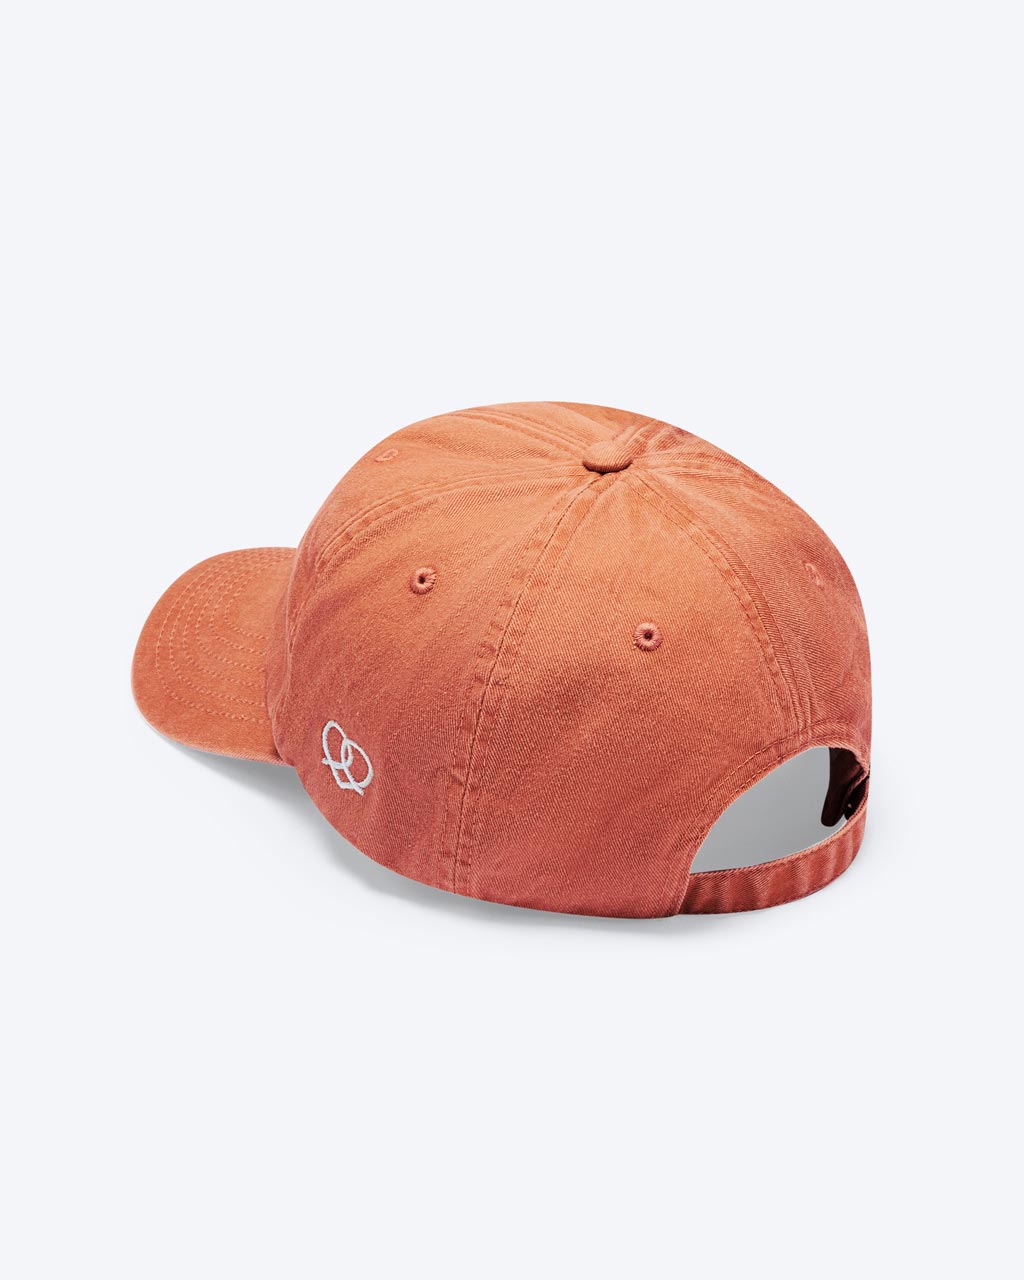 Eine Vintage orange bayerische Cap mit einem Herz-Brezn Logo an der Seite der Cap zu erkennen.